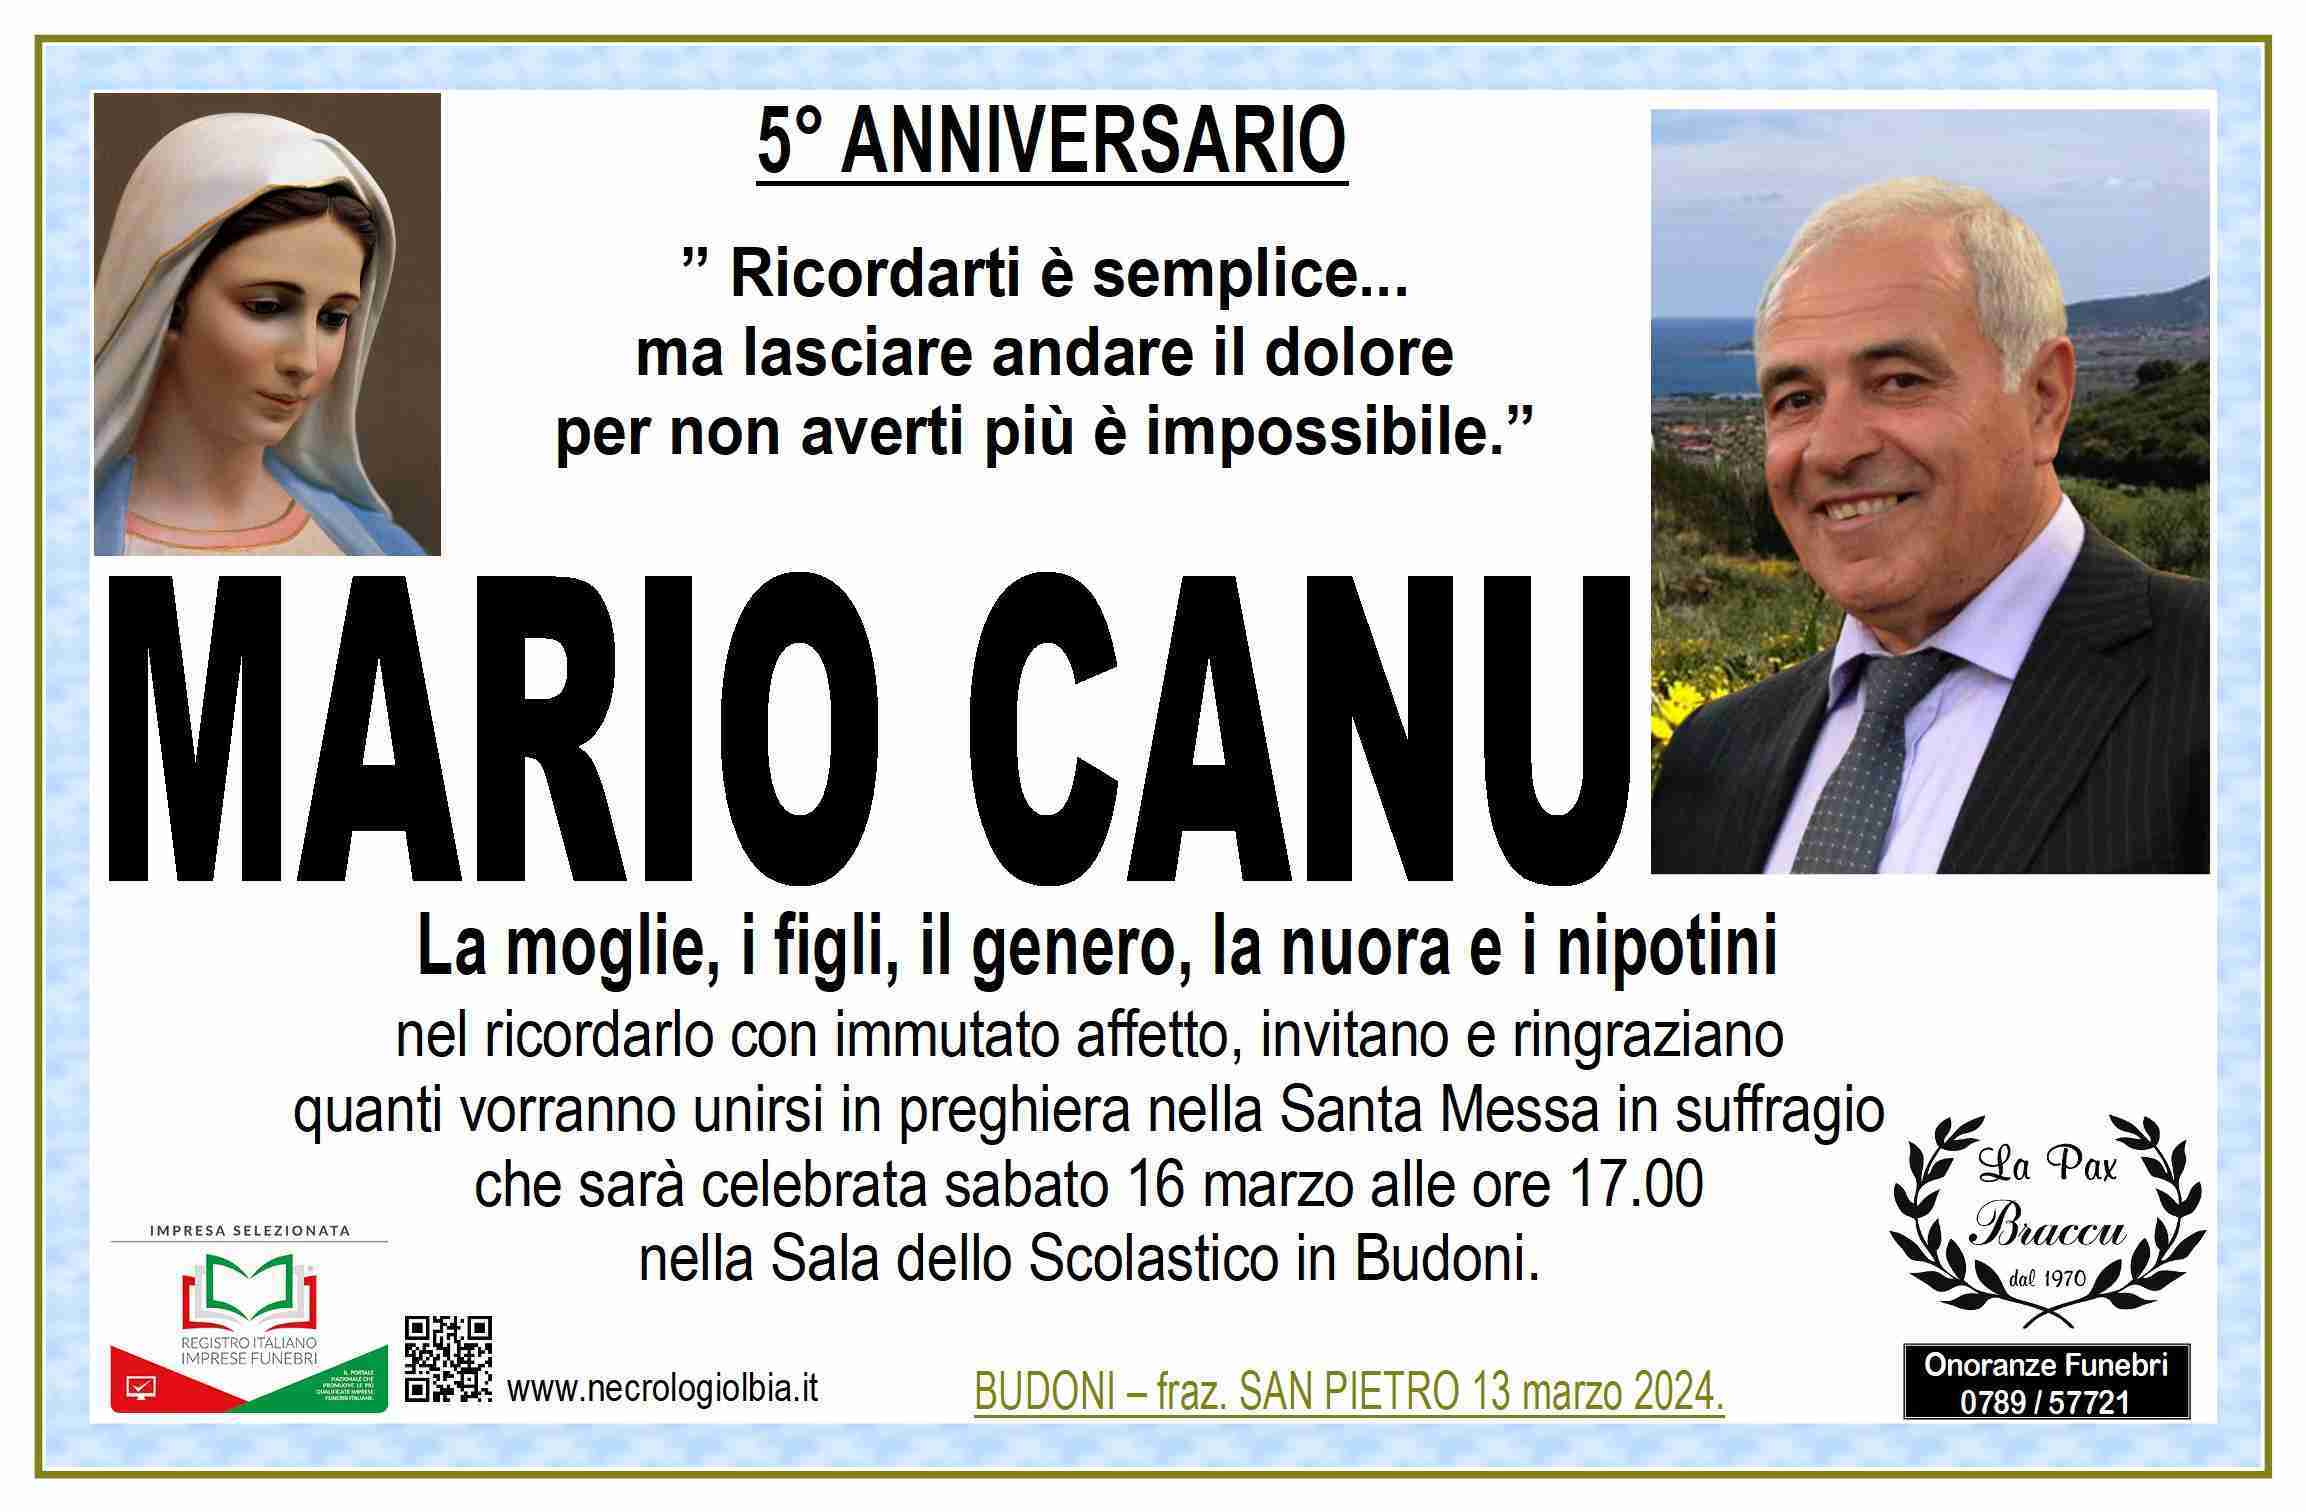 Mario Canu